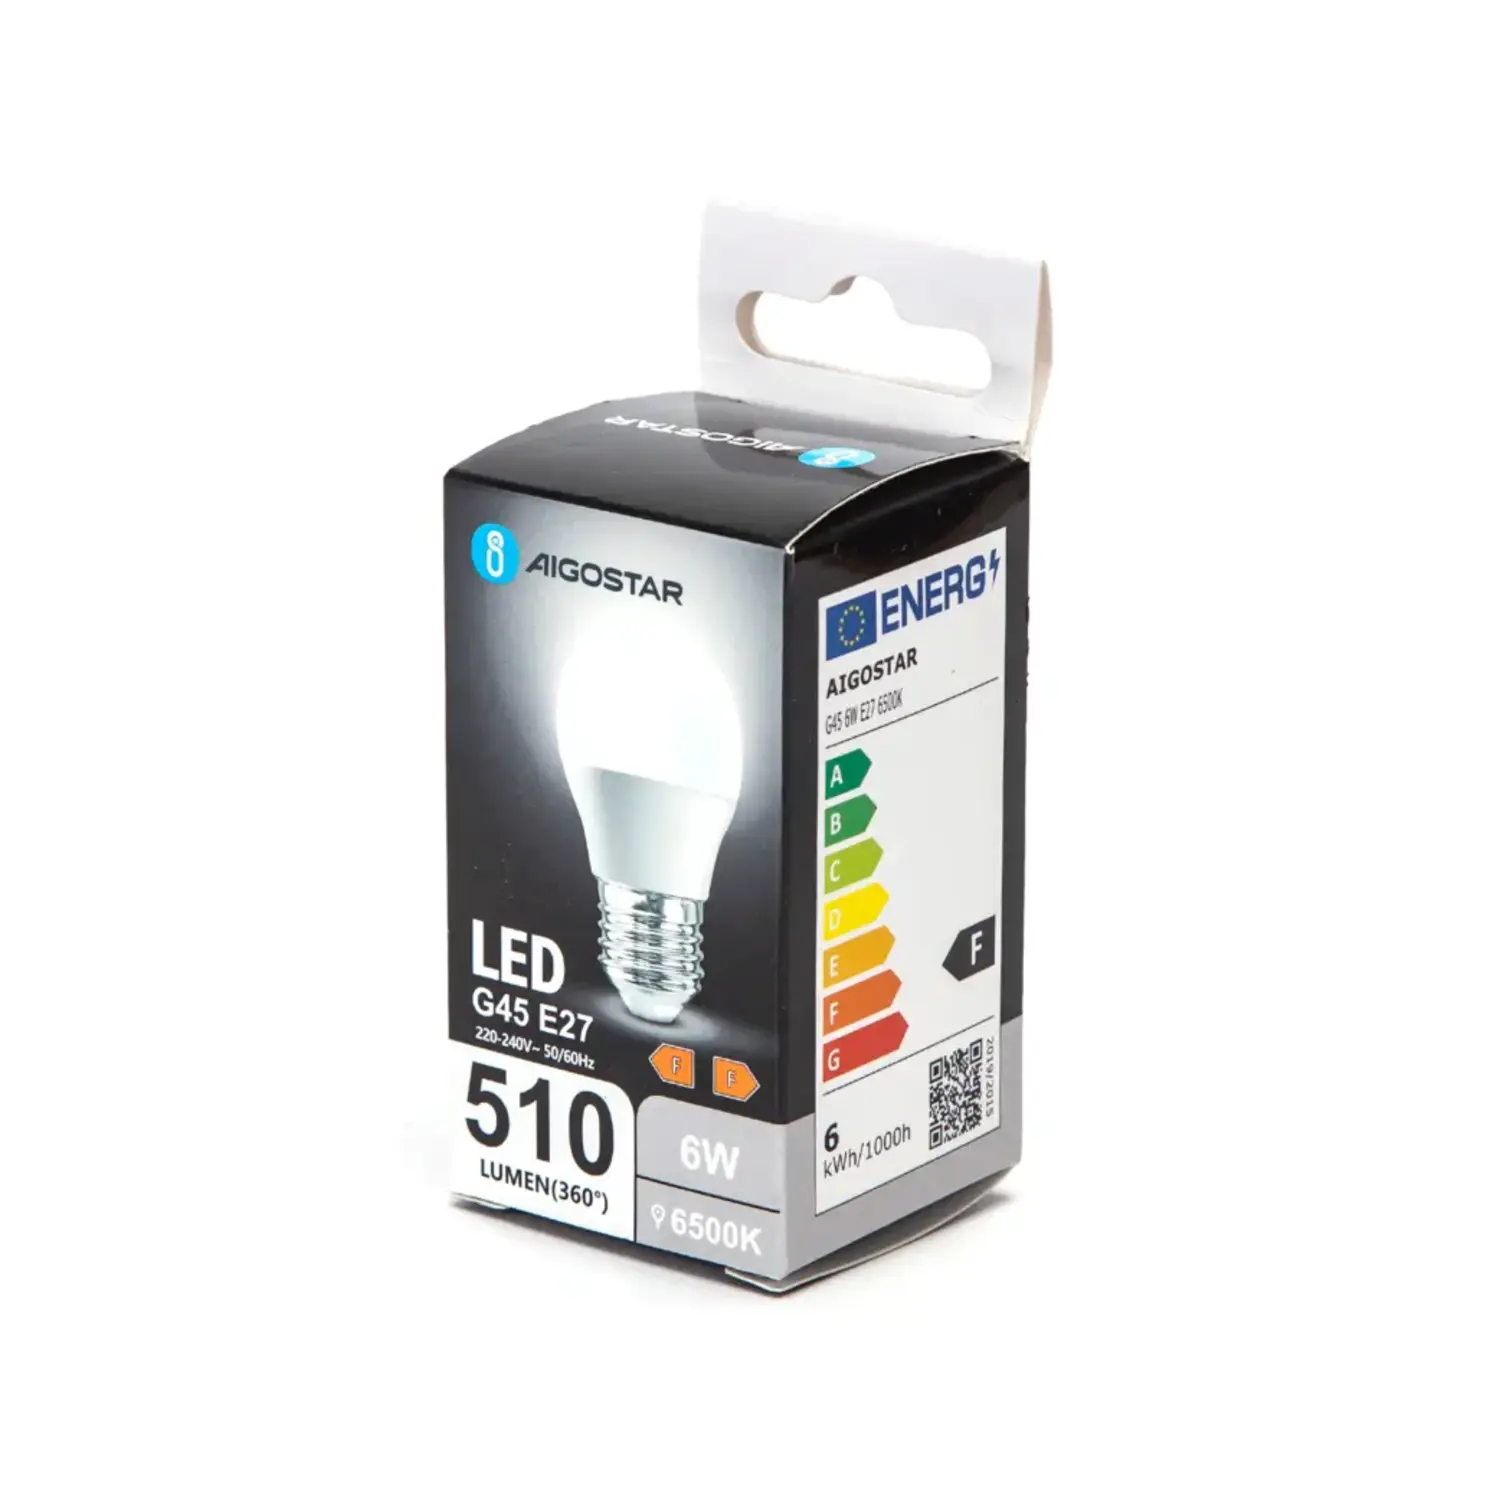 immagine del prodotto lampadina led miniglobo G45 e27 6 watt bianco freddo